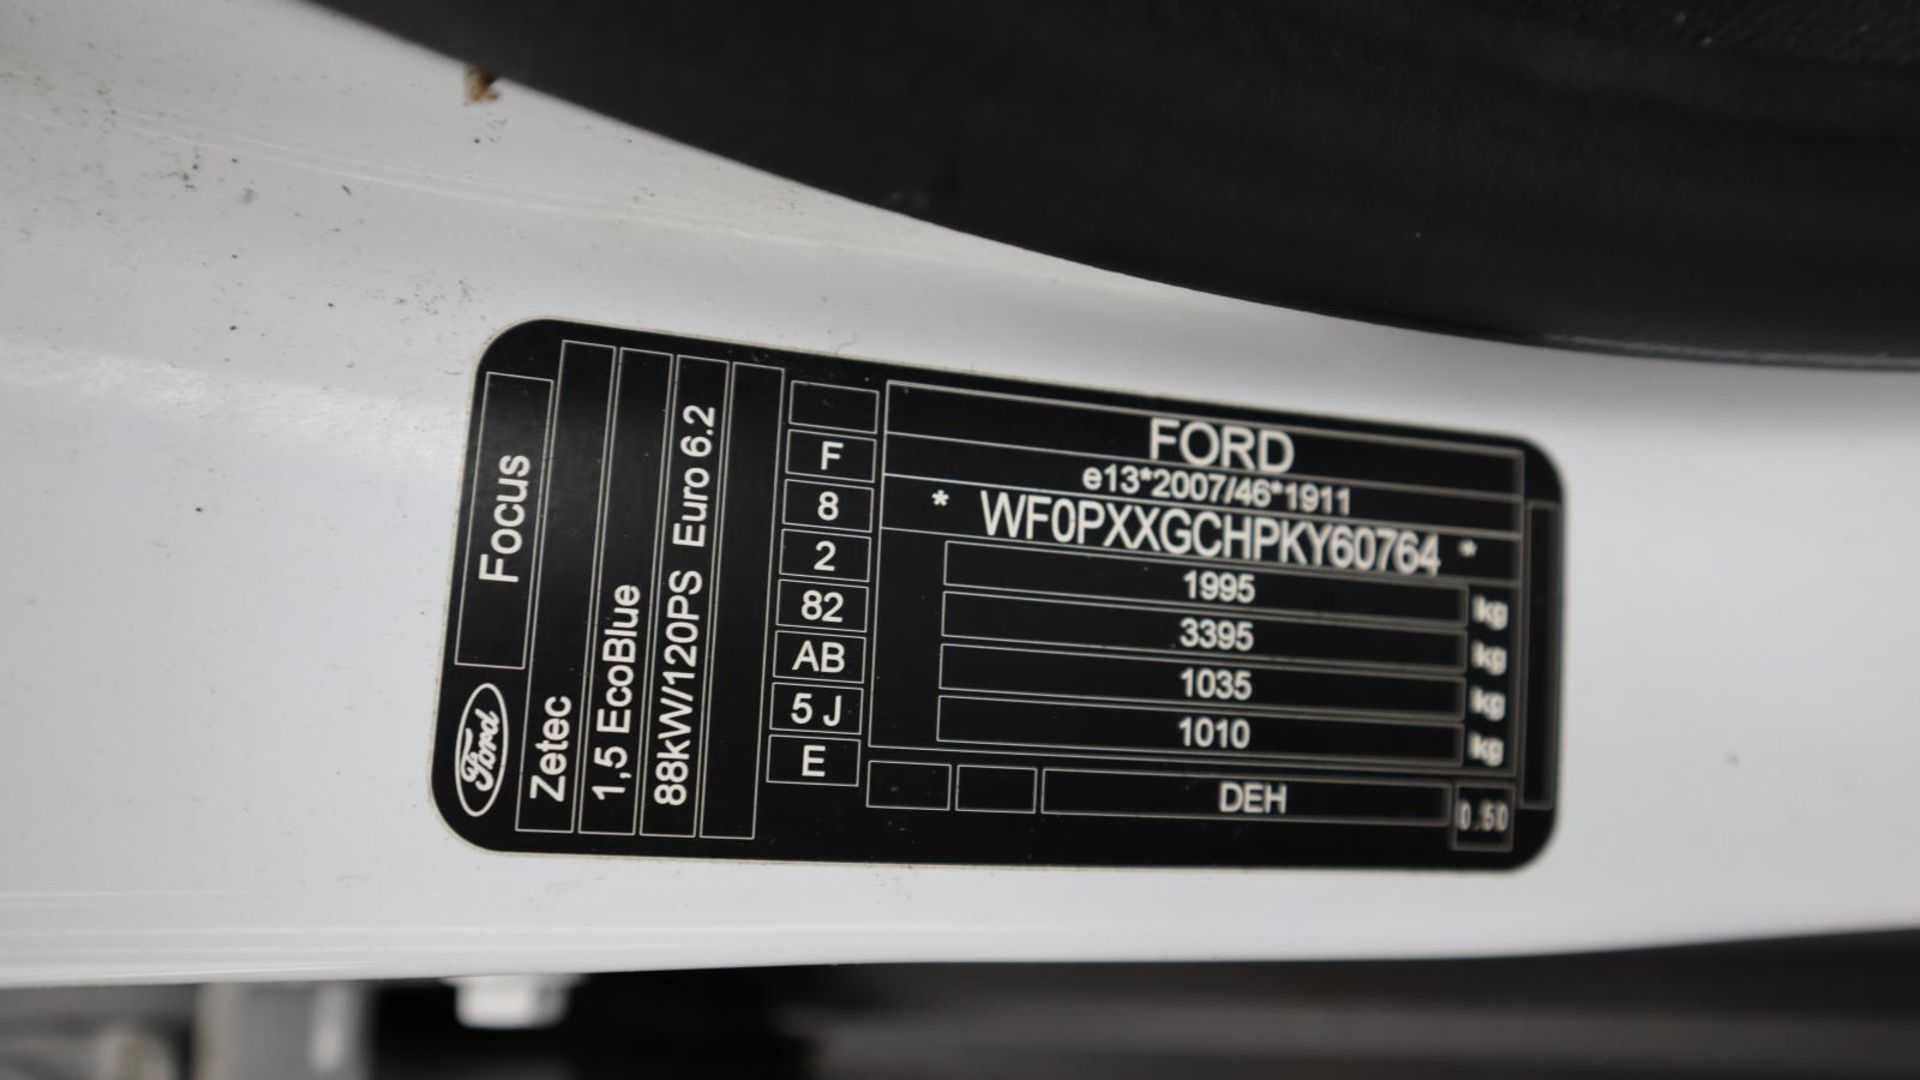 Ford Focus ZETEC Estate TDCI Auto - LG69 YZB - 12360 miles - 1.5L - Diesel - Image 17 of 47